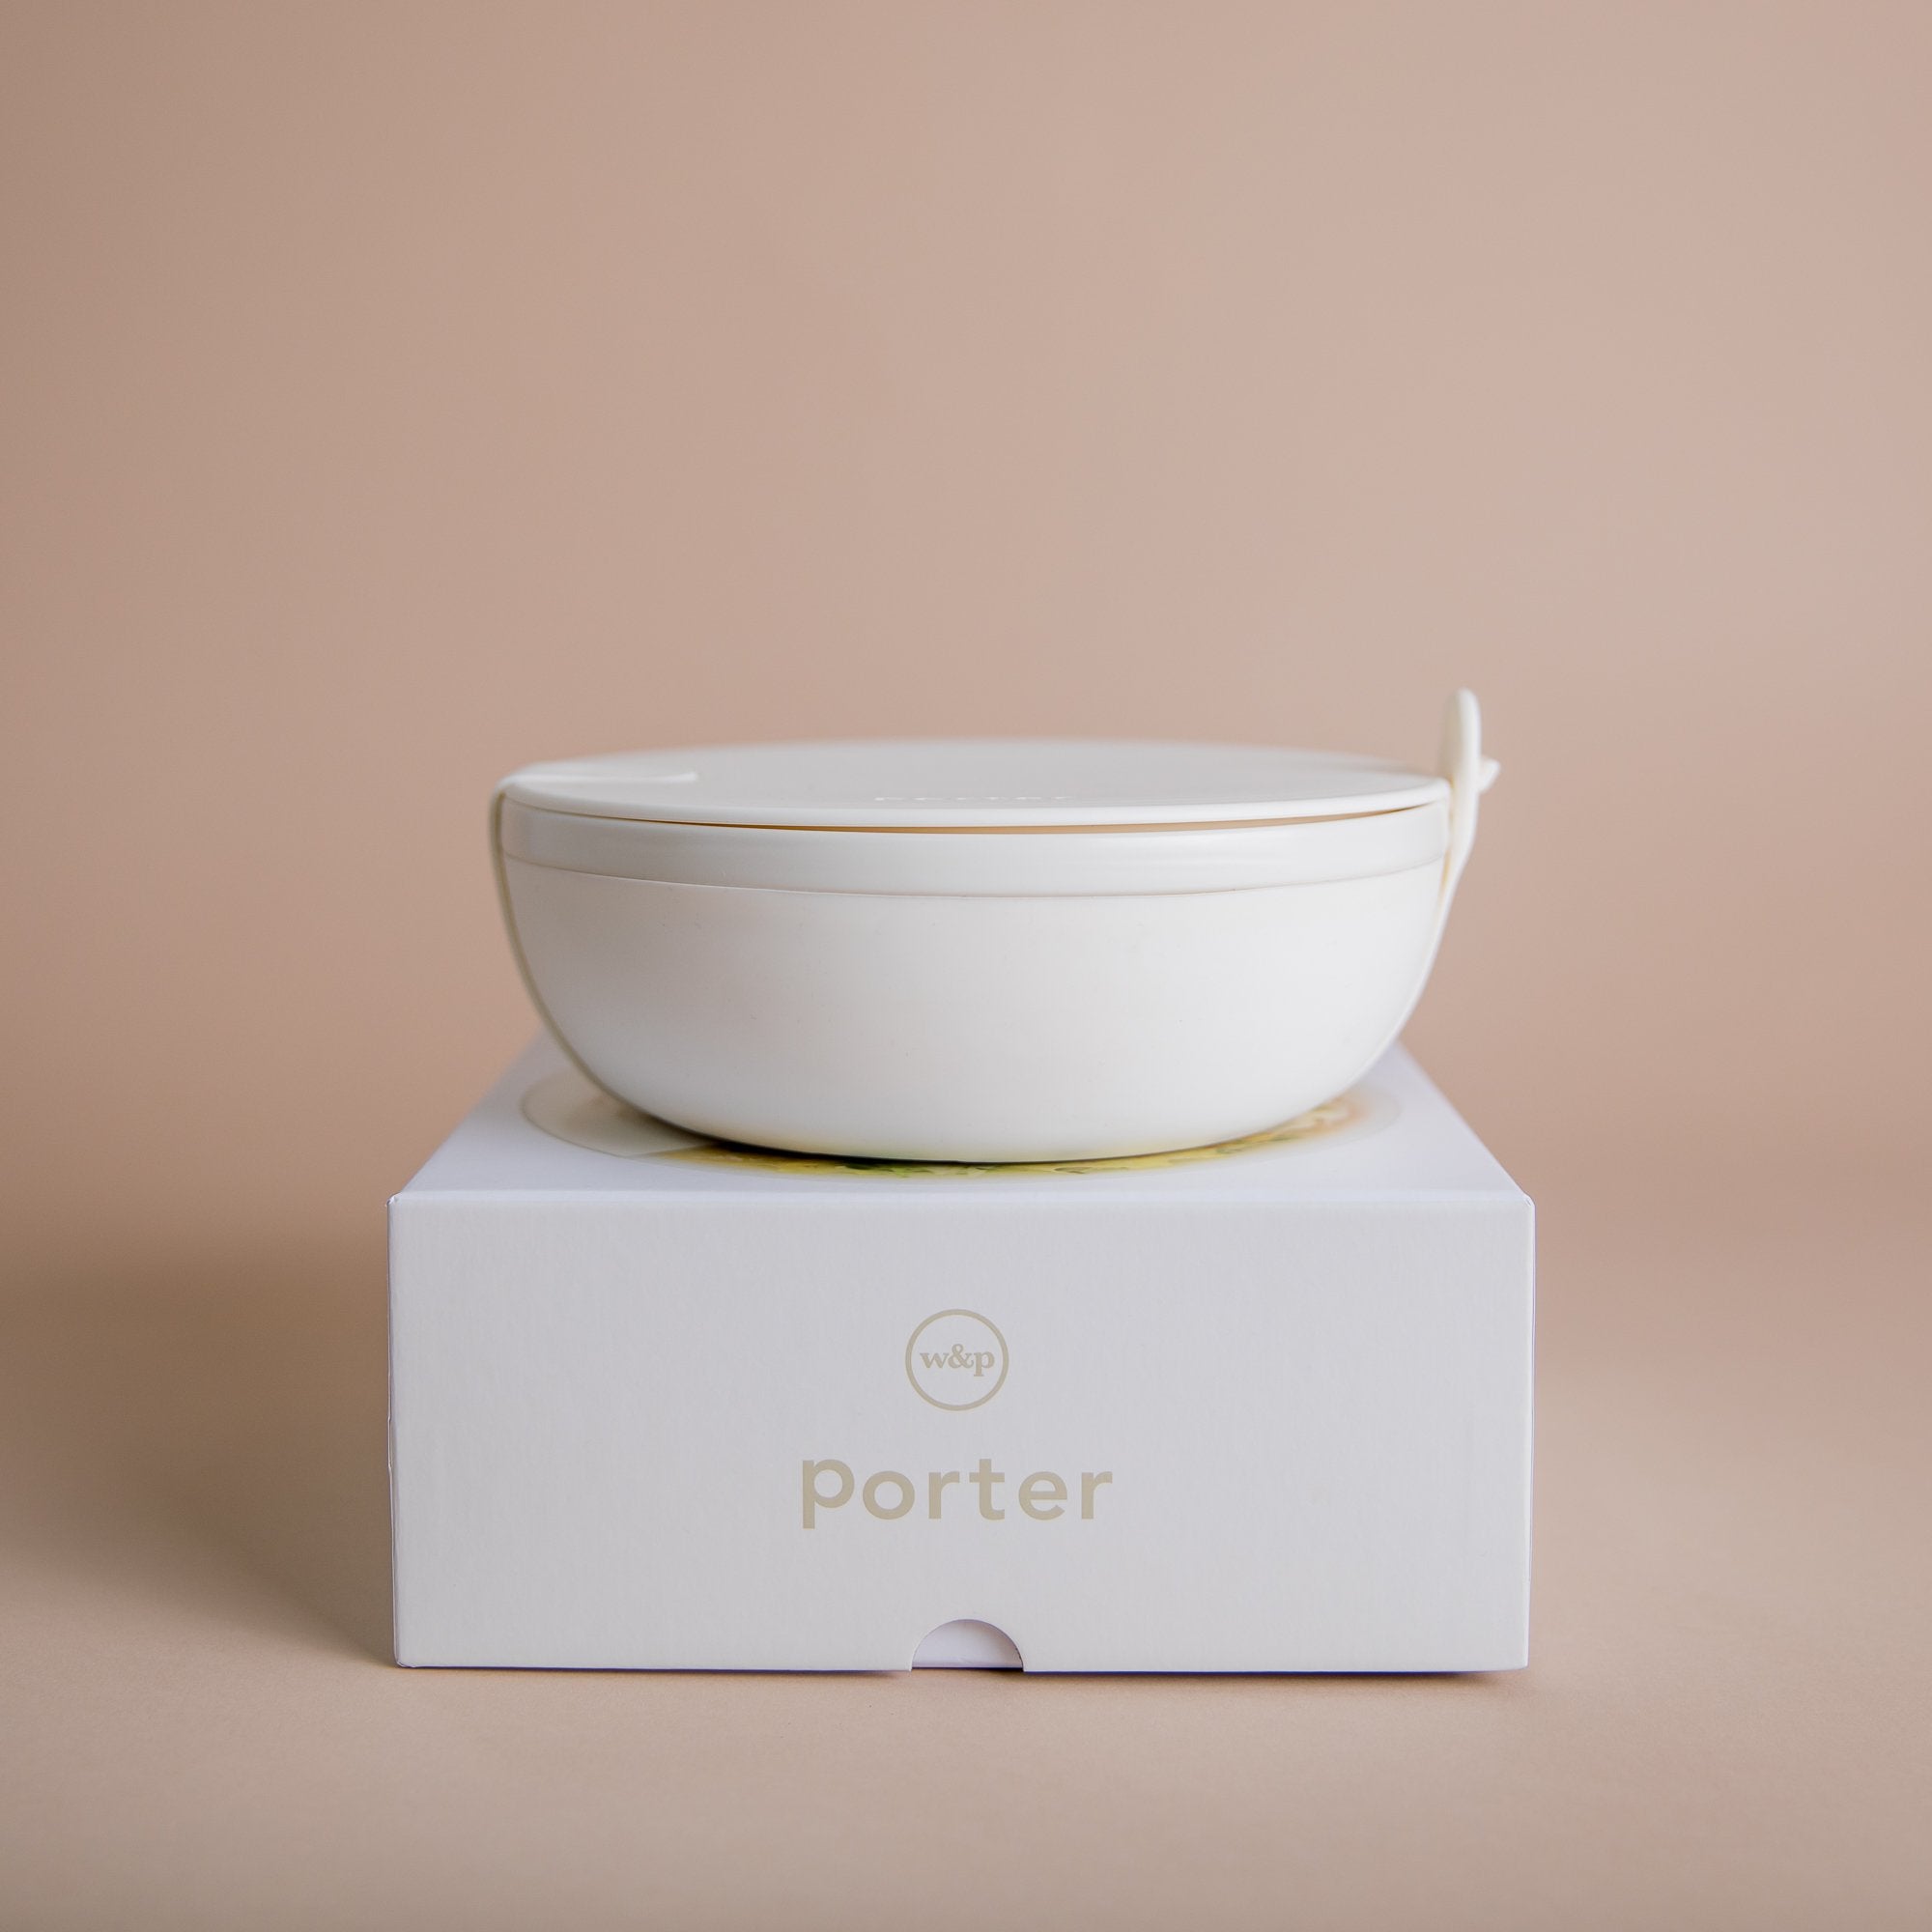 W&P Porter Ceramic To-Go Bowl